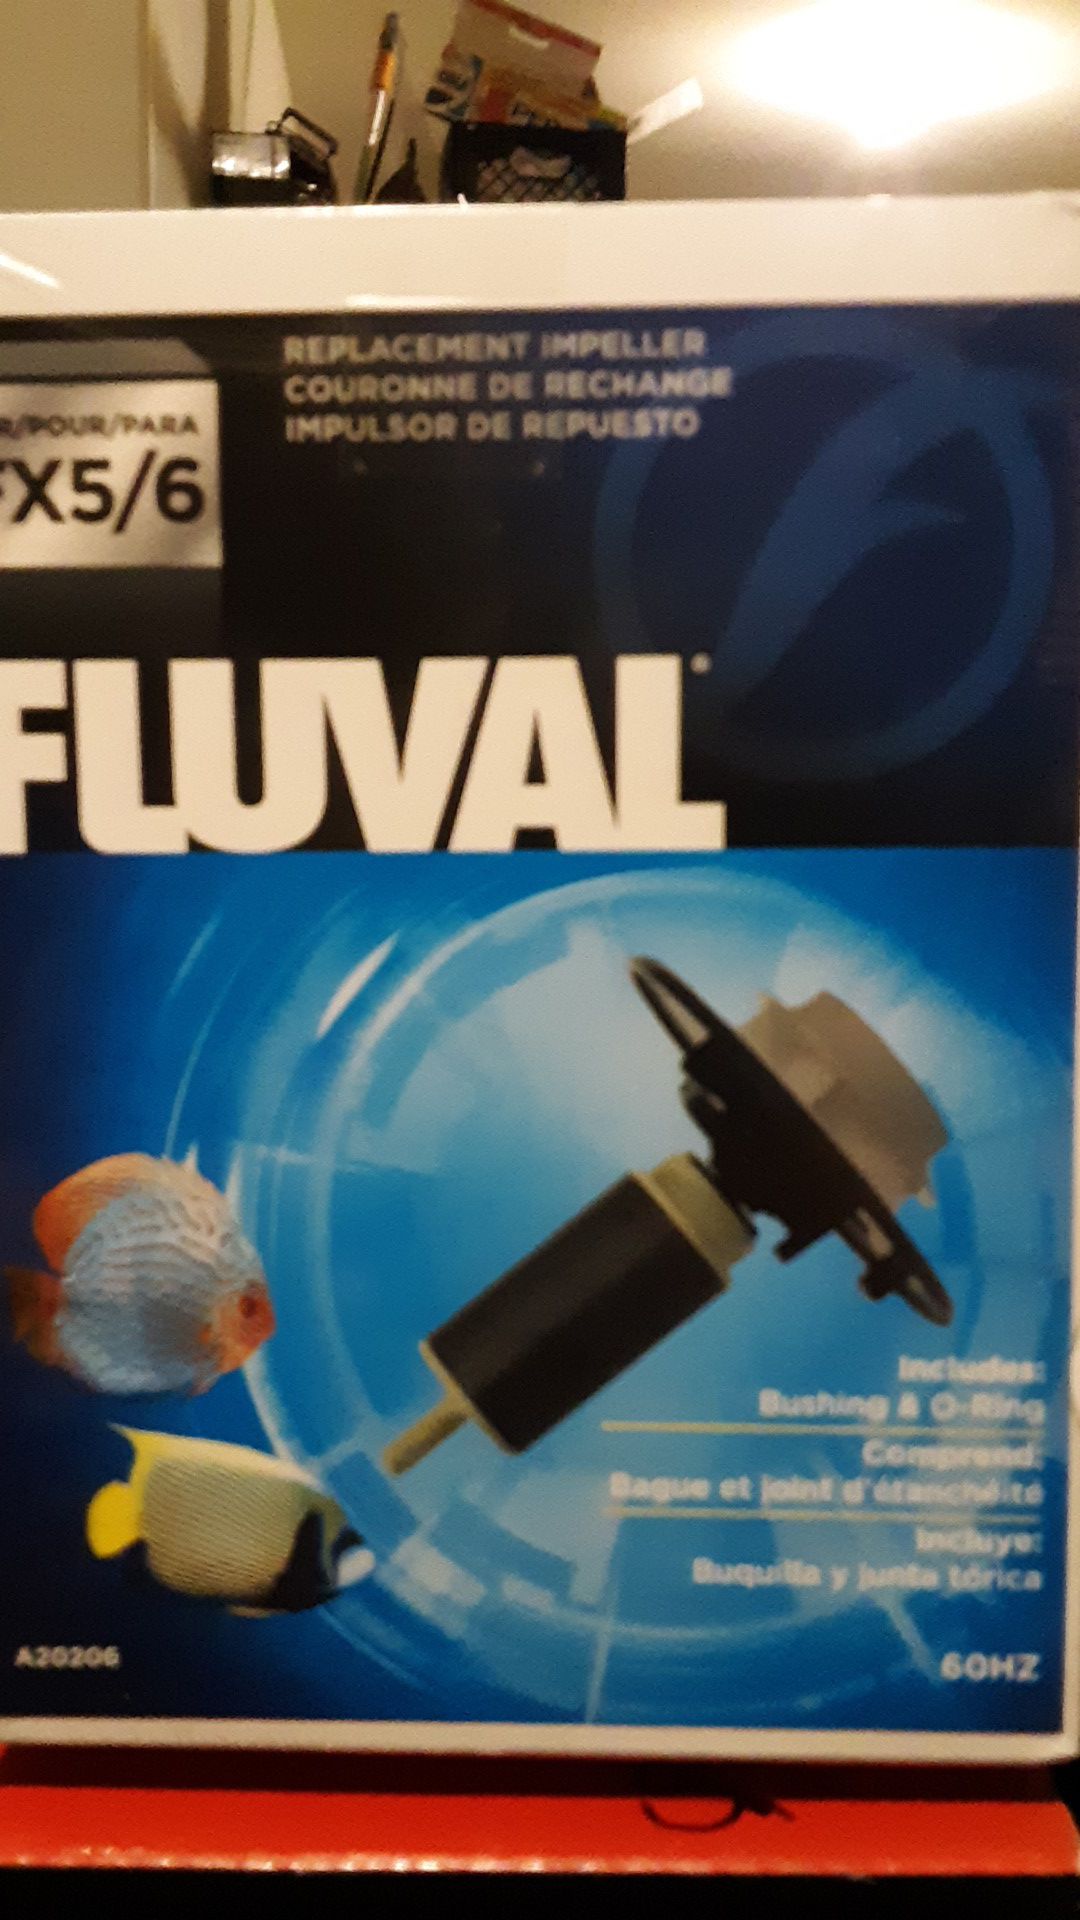 Fluval FX5 /FX6 Impeller